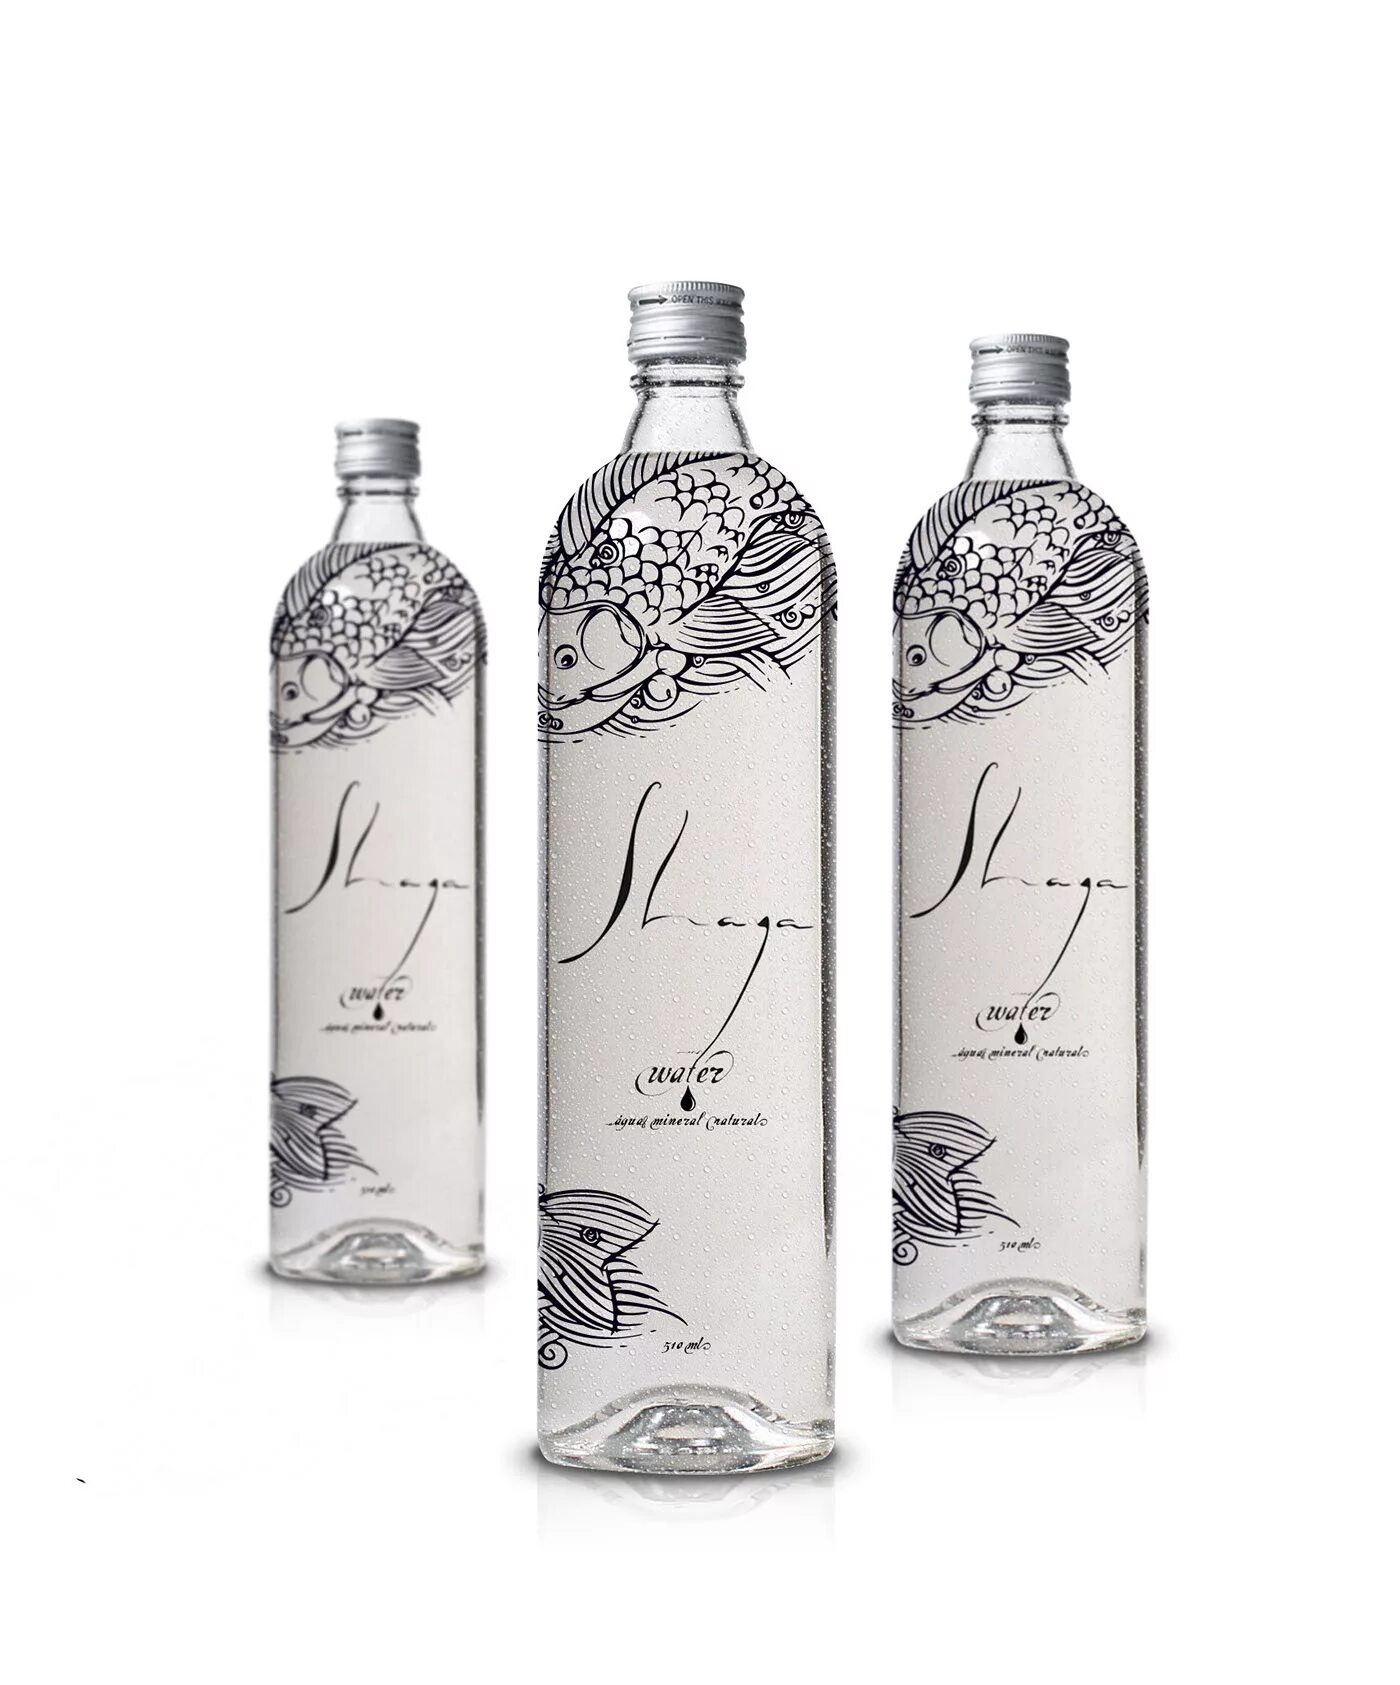 Вода luxury. Дизайнерские бутылки. Дизайнерская бутылка для воды. Бутылки стеклянные дизайнерские. Элитная вода в бутылках.